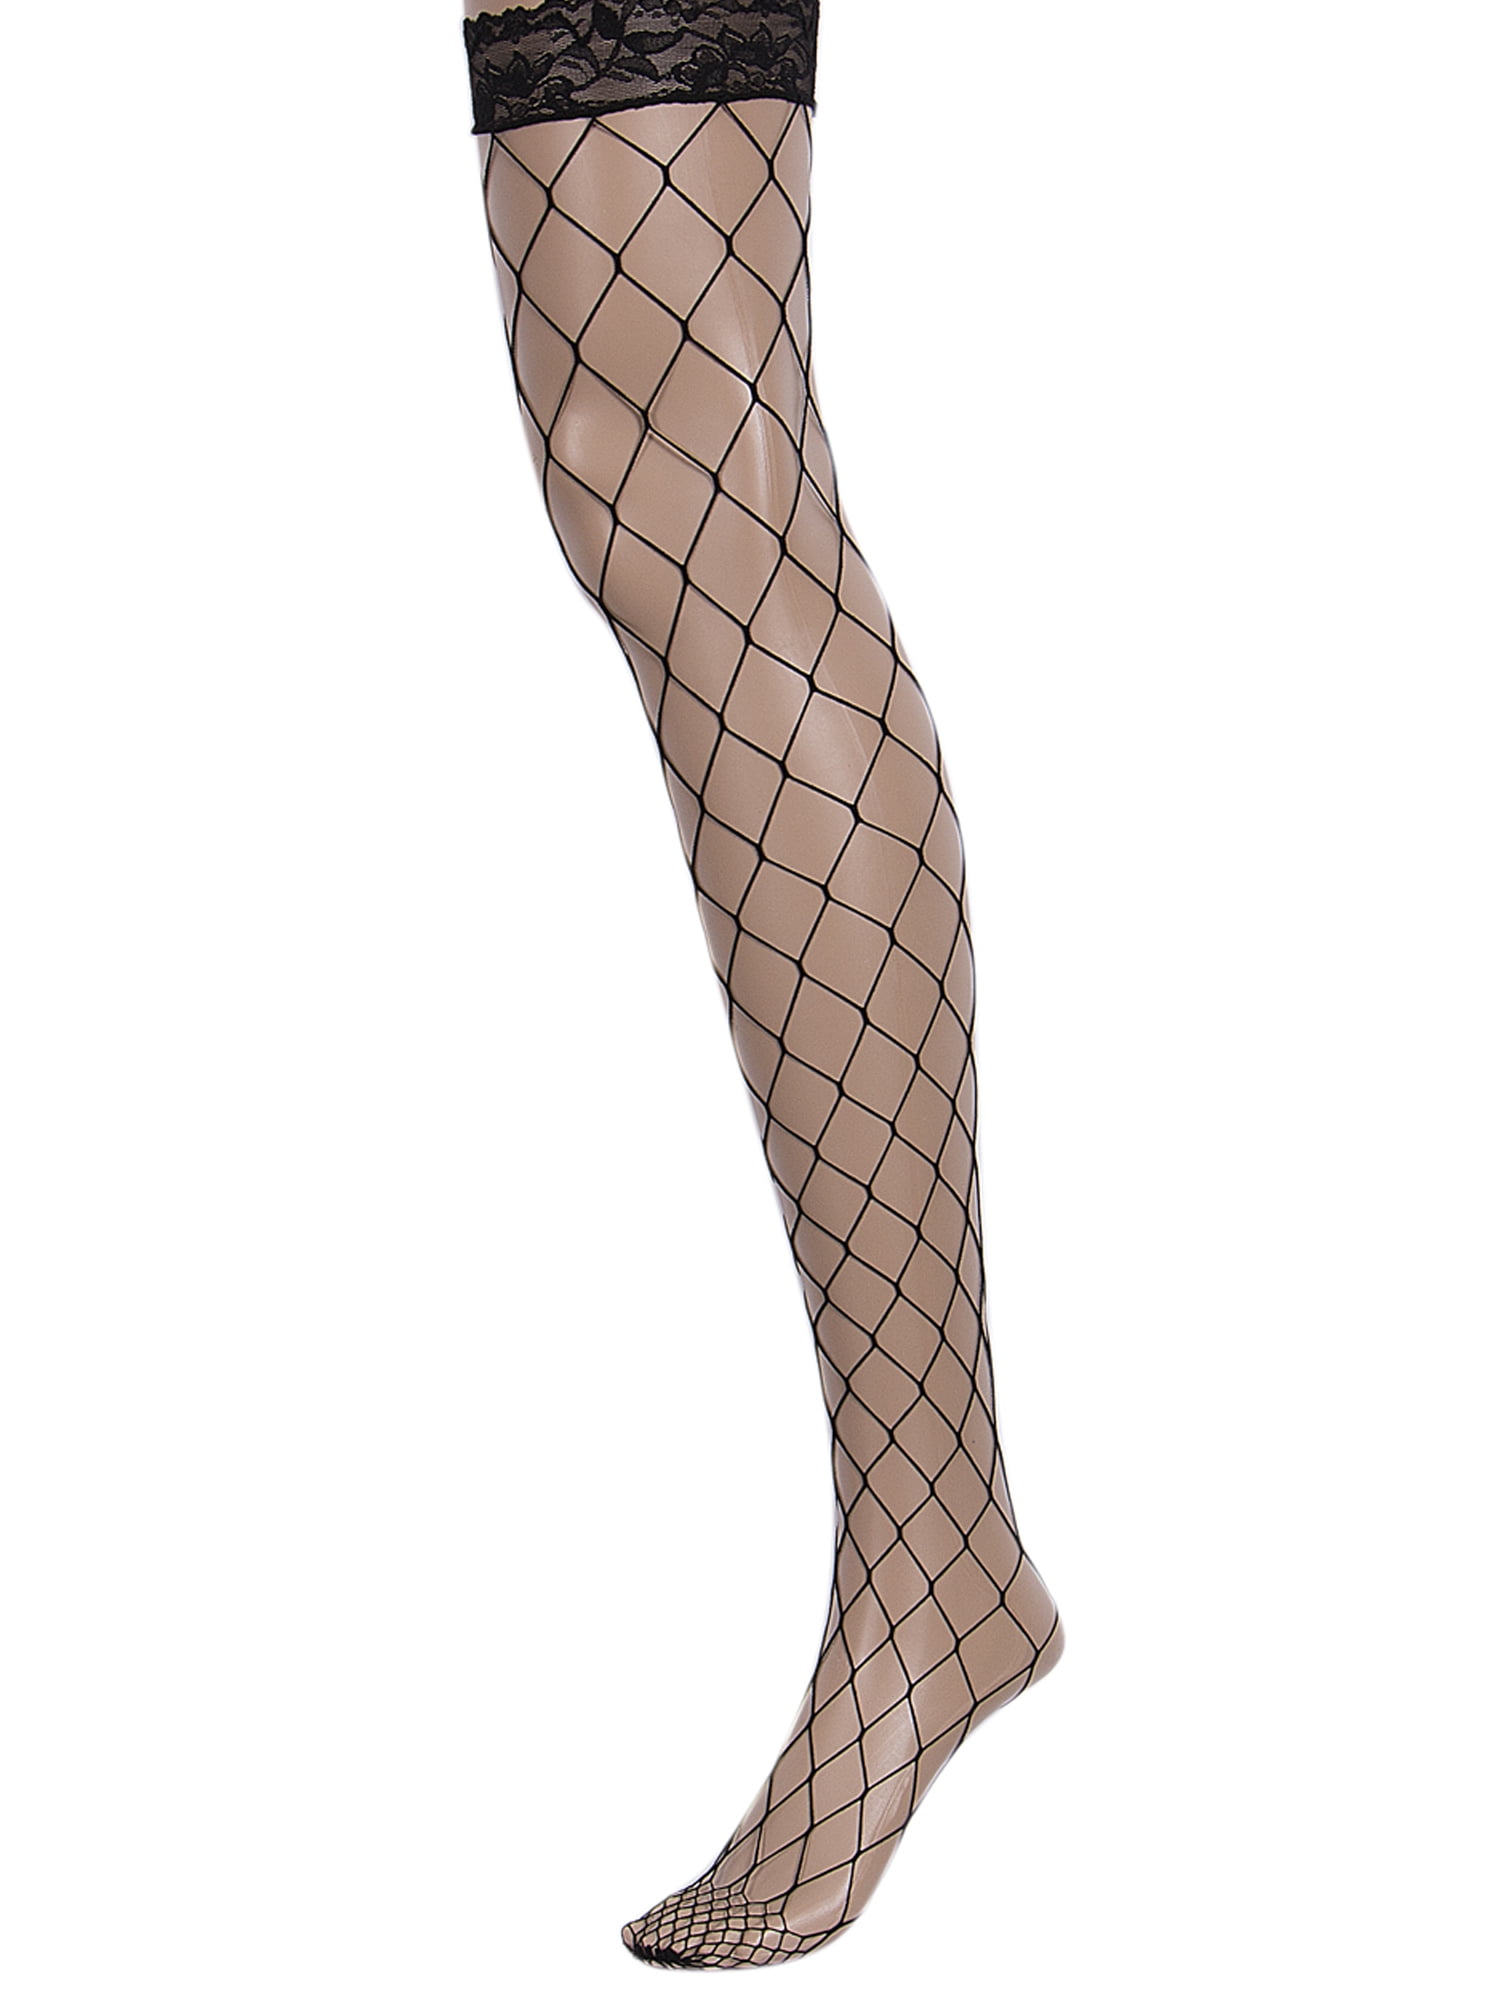 Ayliss Women Black Fishnet Knee High Socks Elastic Hollow Out Dress Trouser Mesh Net Tight Stocking for Mini Skirt